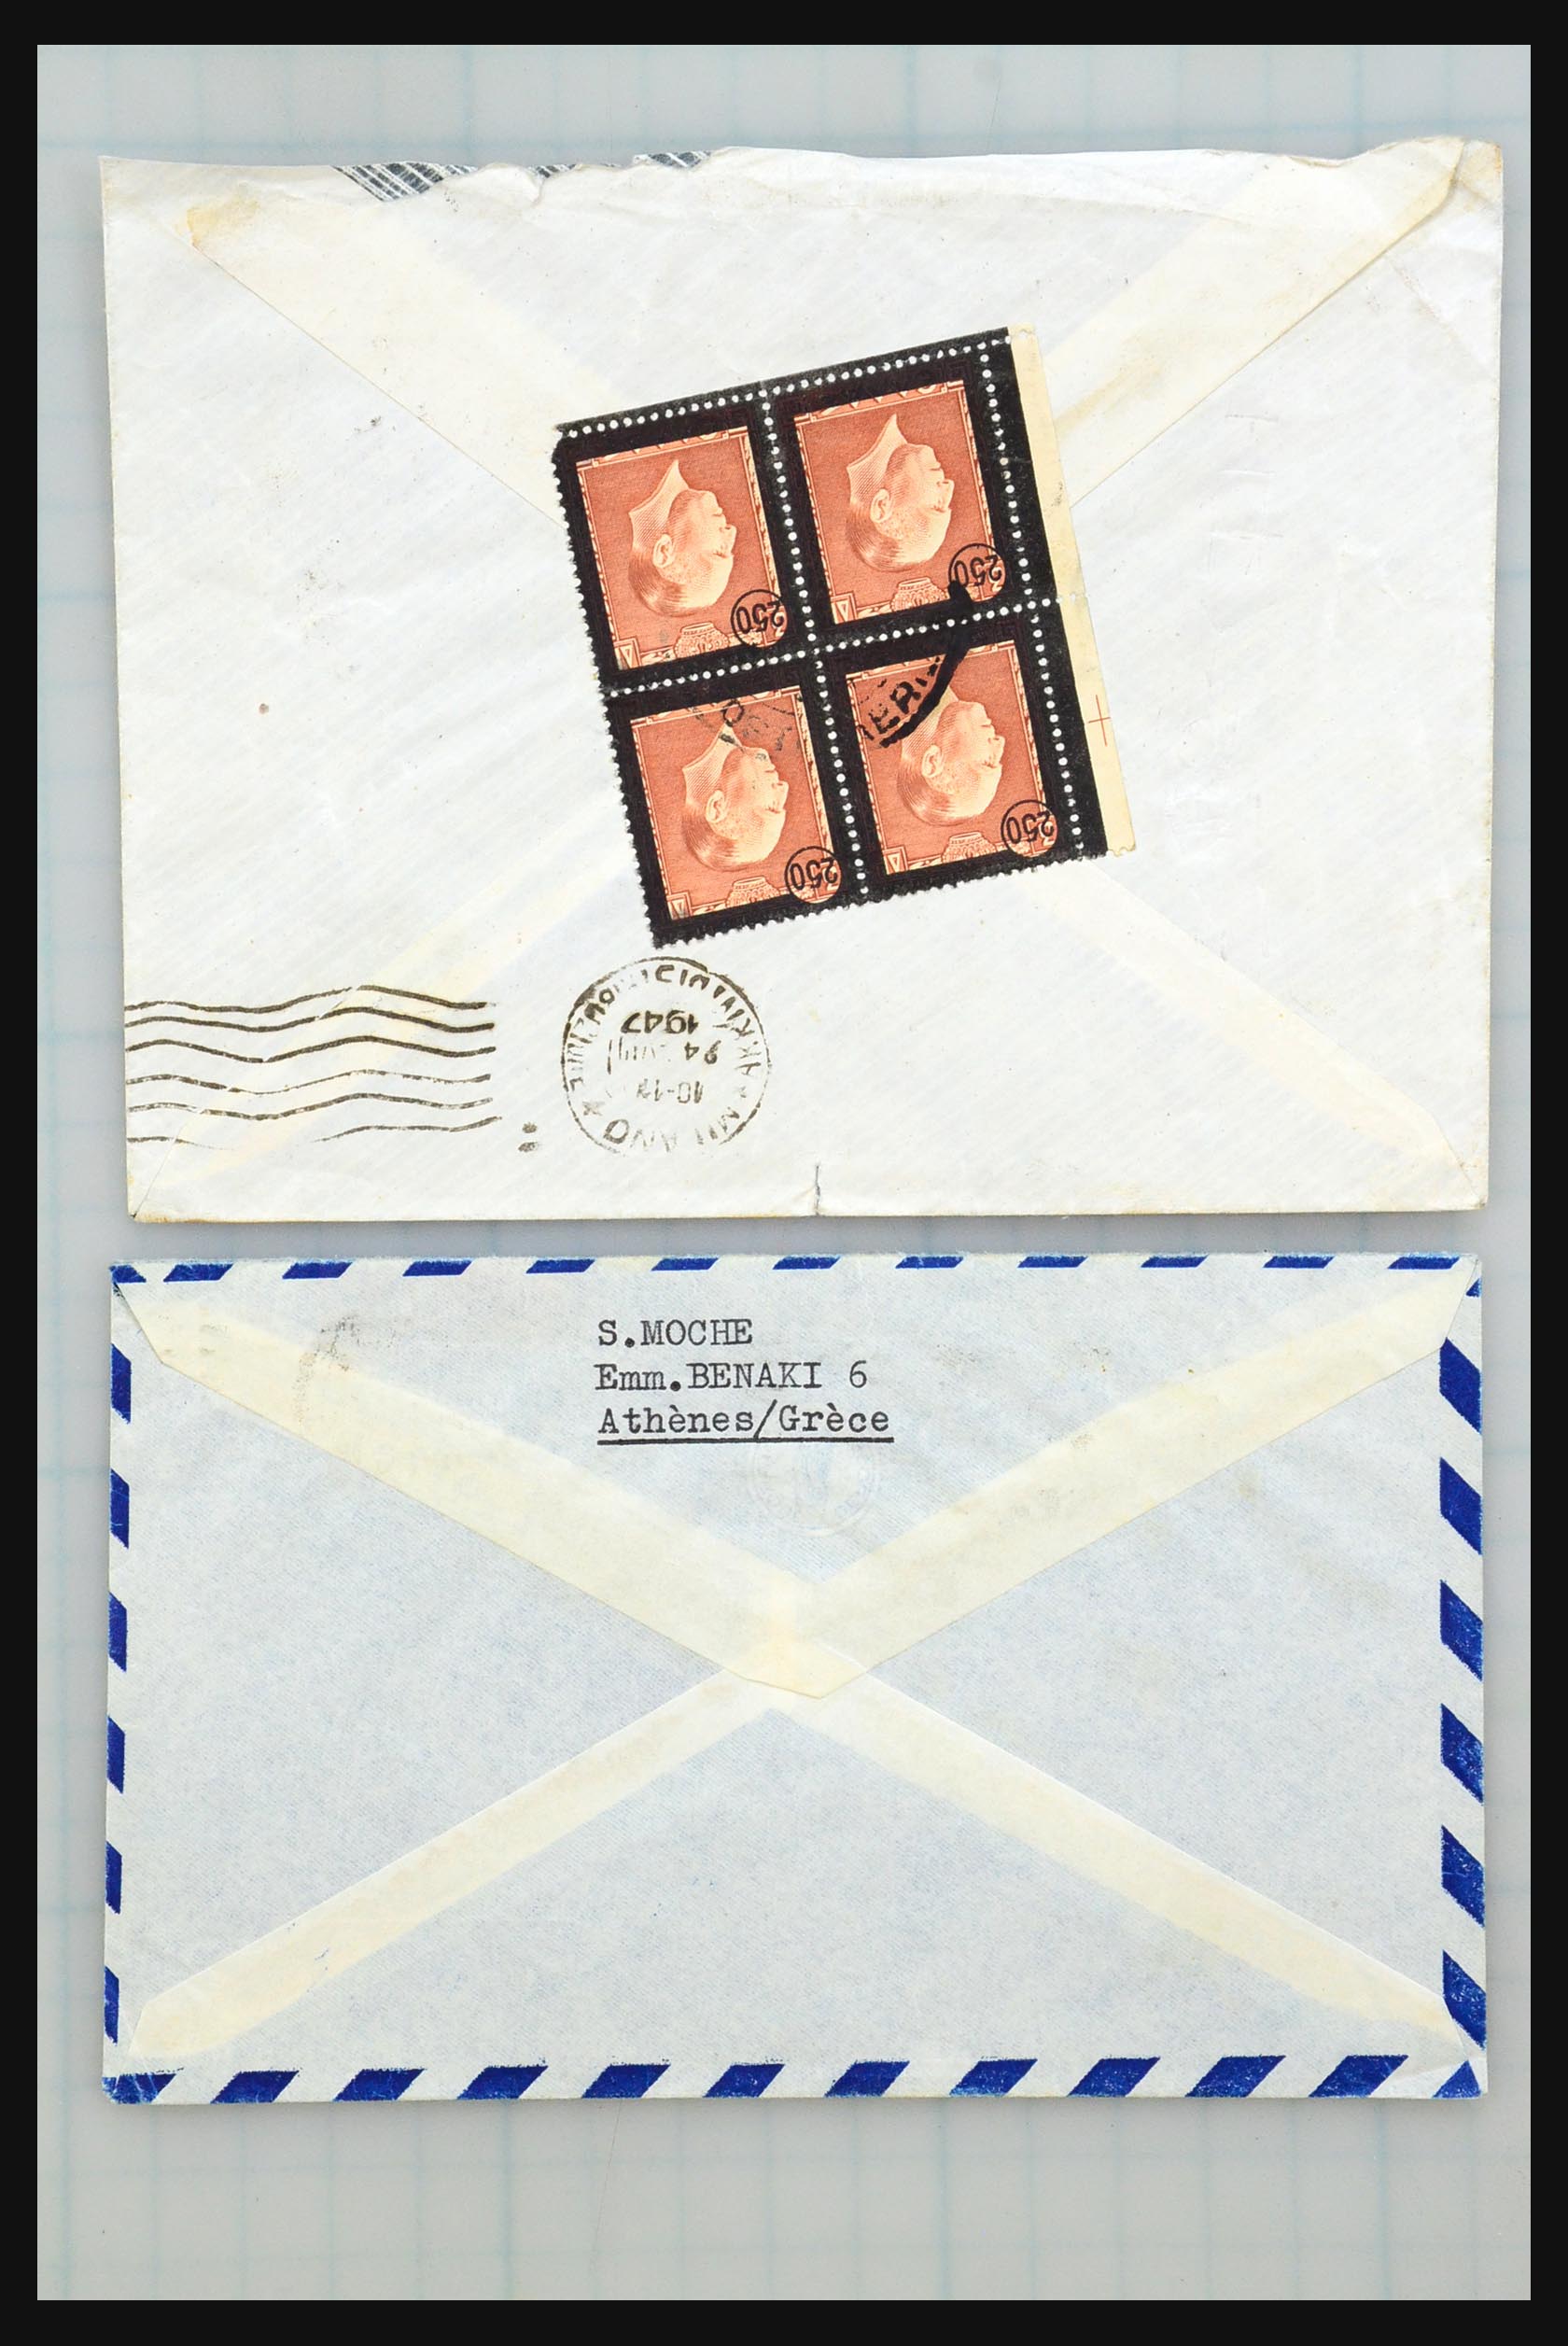 31358 117 - 31358 Portugal/Luxemburg/Griekenland brieven 1880-1960.